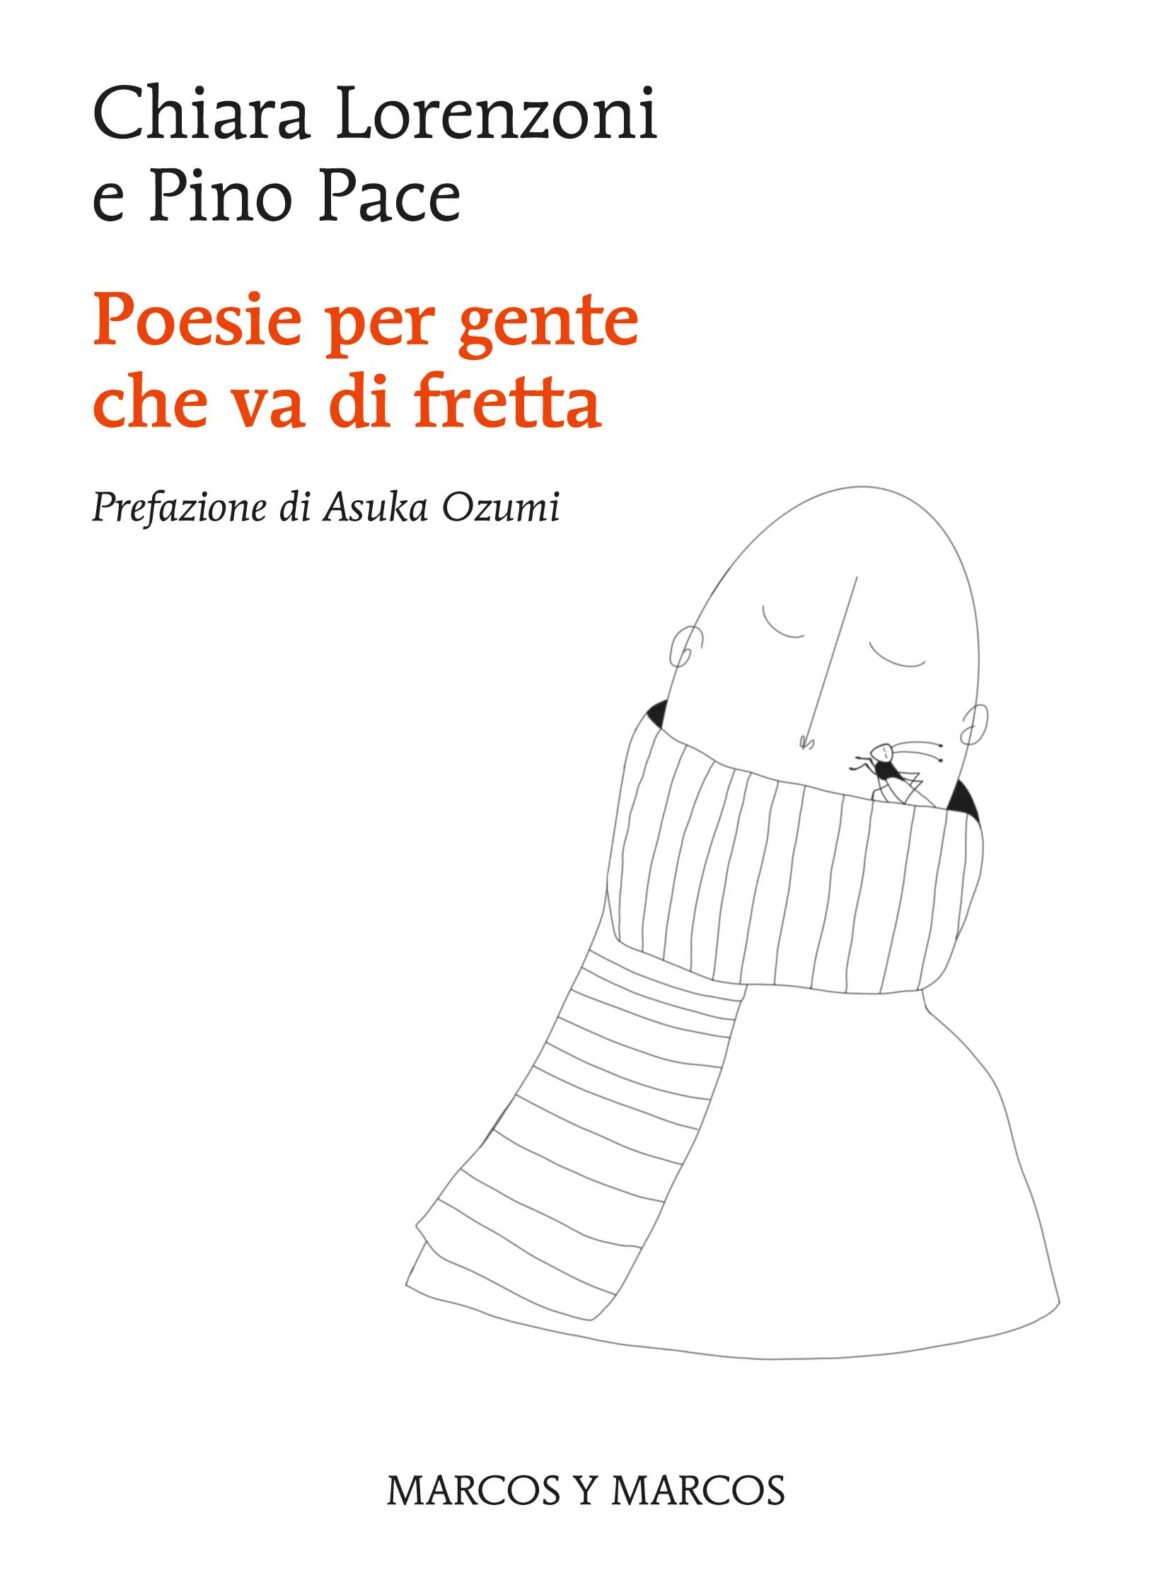 Poesie Per Gente Che Va Di Fretta di C. Lorenzoni e P. Pace – Recensione